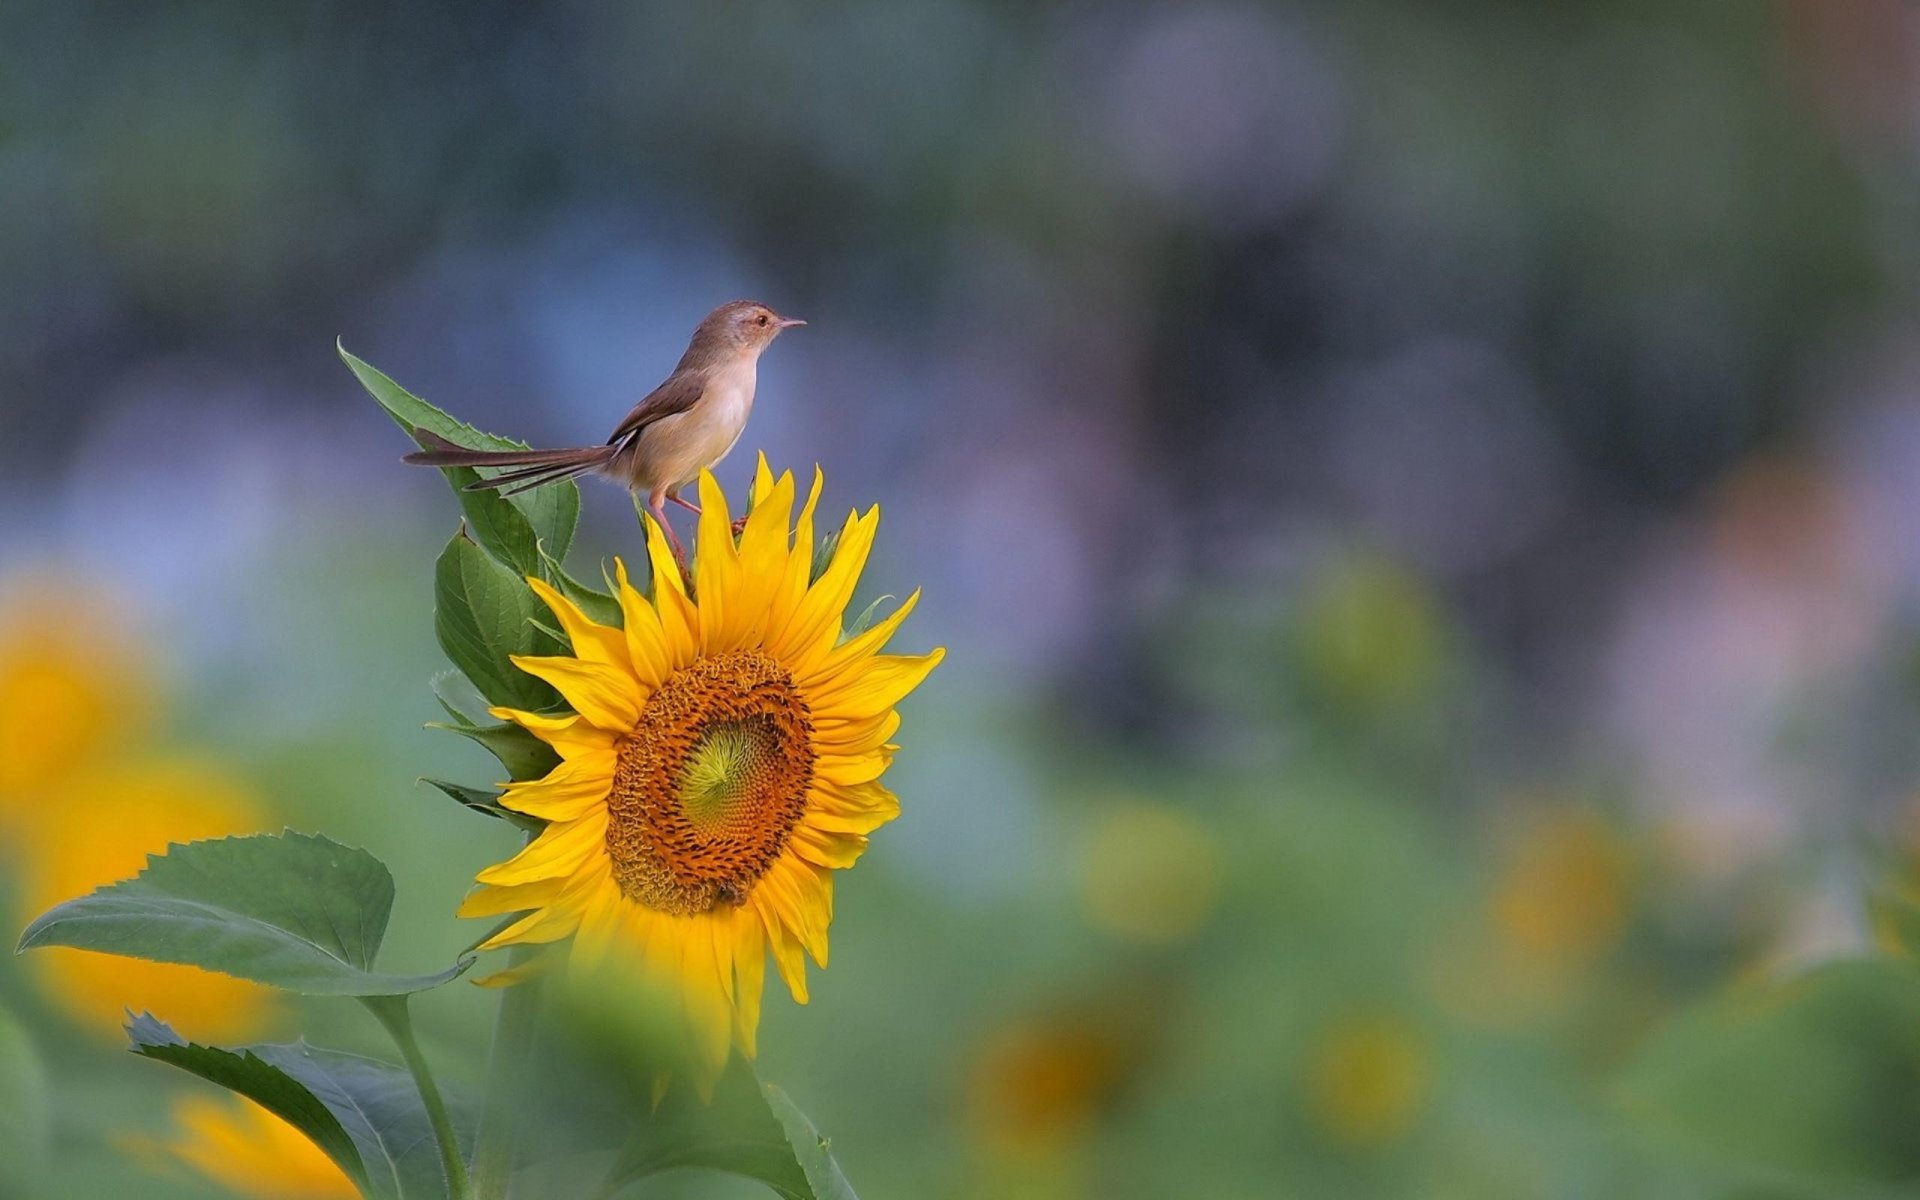 Sparrow-on-the-sunflower.jpg